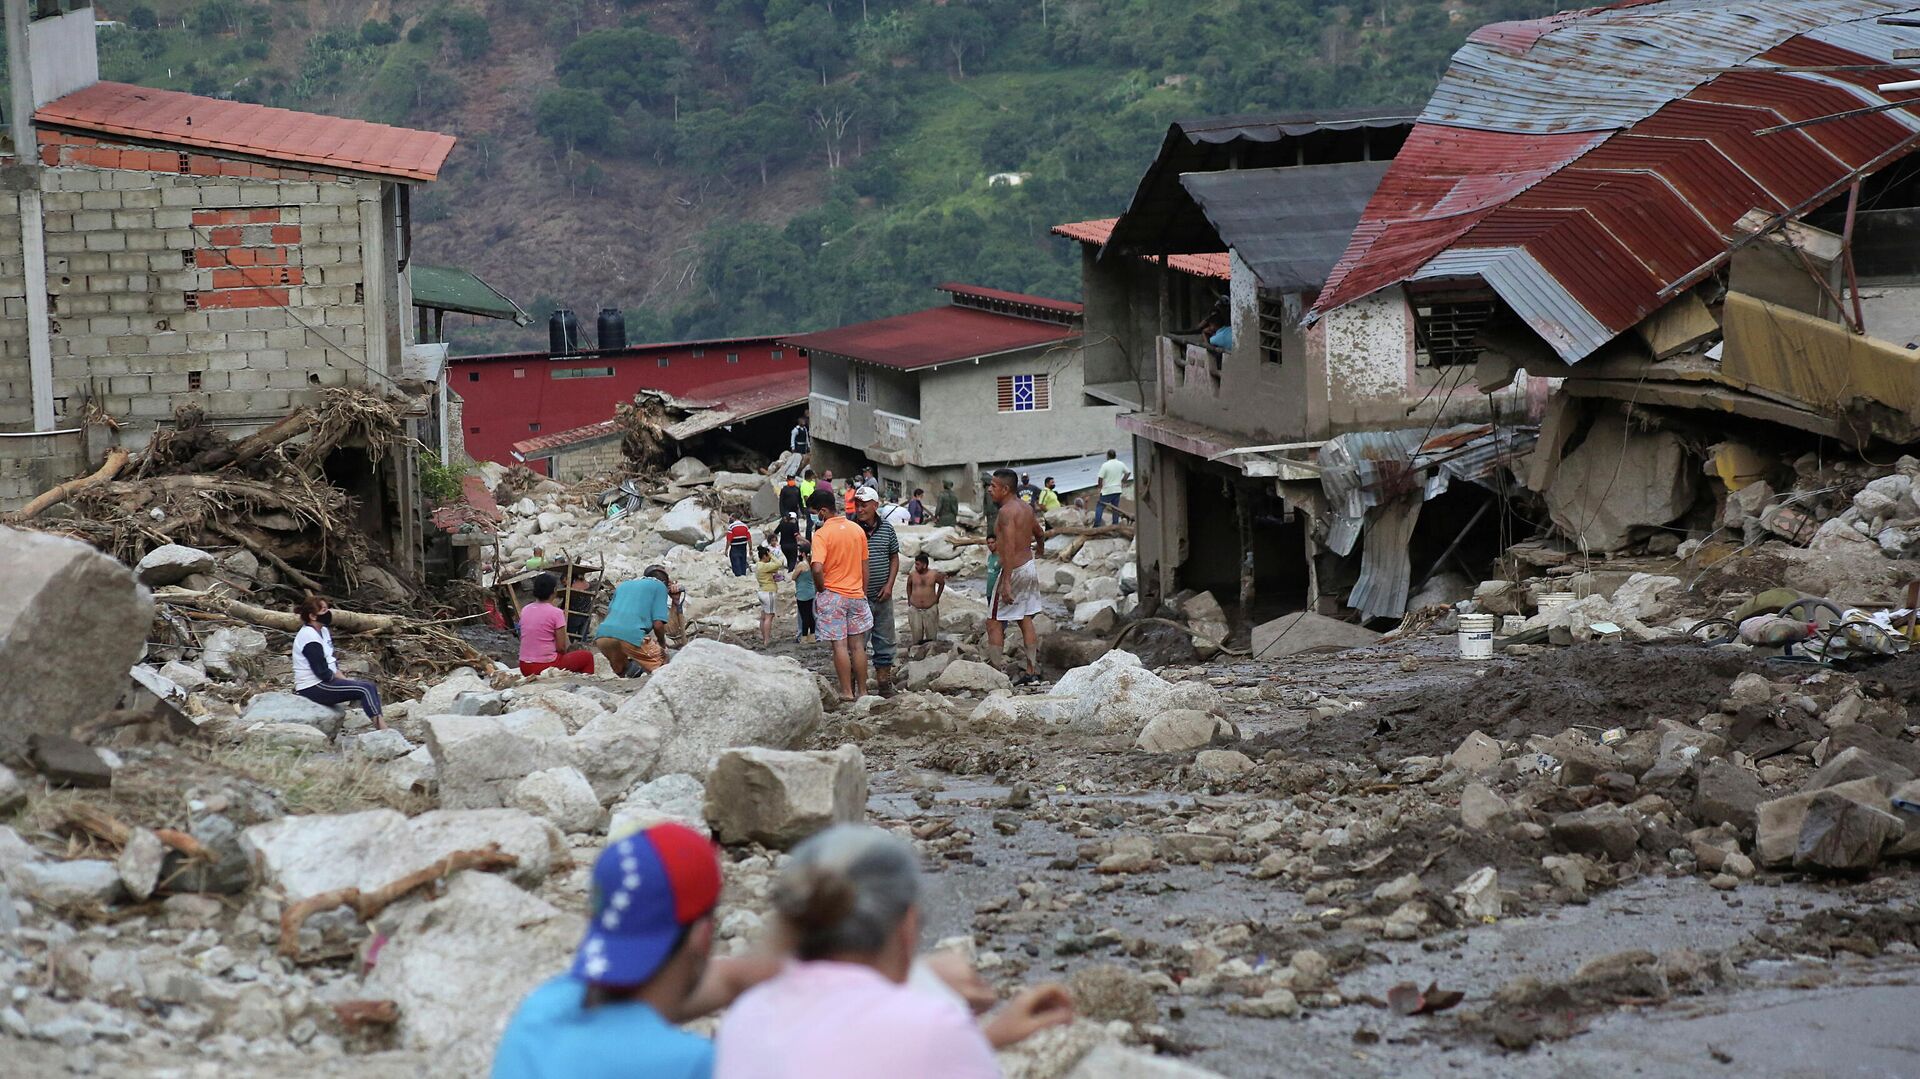 Inundaciones en Tovar, en Mérida, Venezuela - Sputnik Mundo, 1920, 27.08.2021